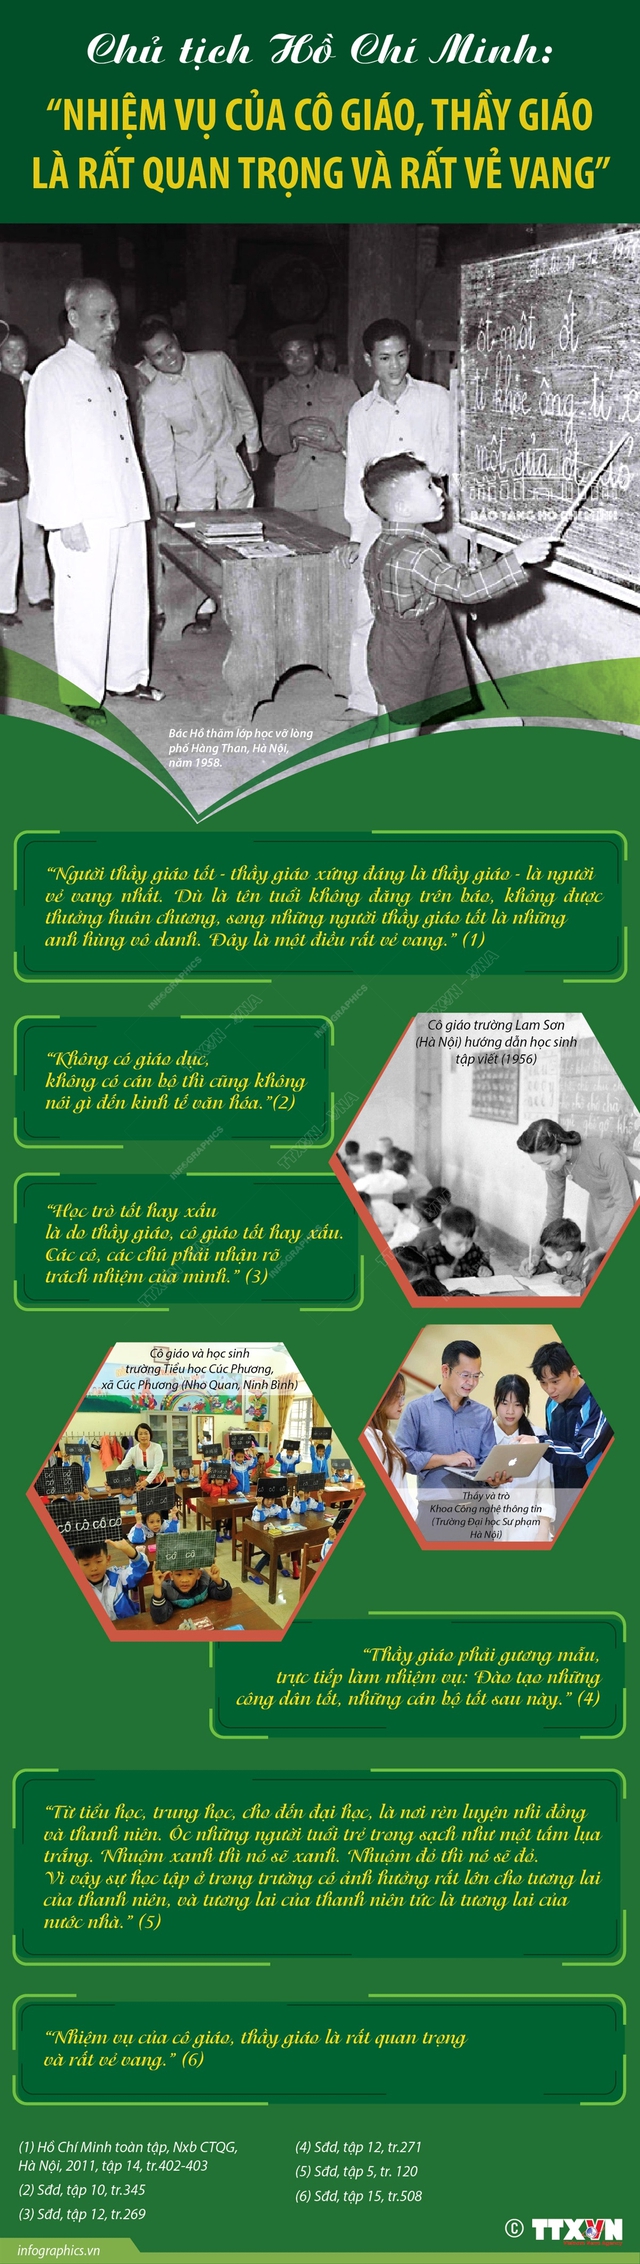 Chủ tịch Hồ Chí Minh: “Nhiệm vụ của cô giáo, thầy giáo là rất quan trọng và rất vẻ vang” - Ảnh 1.